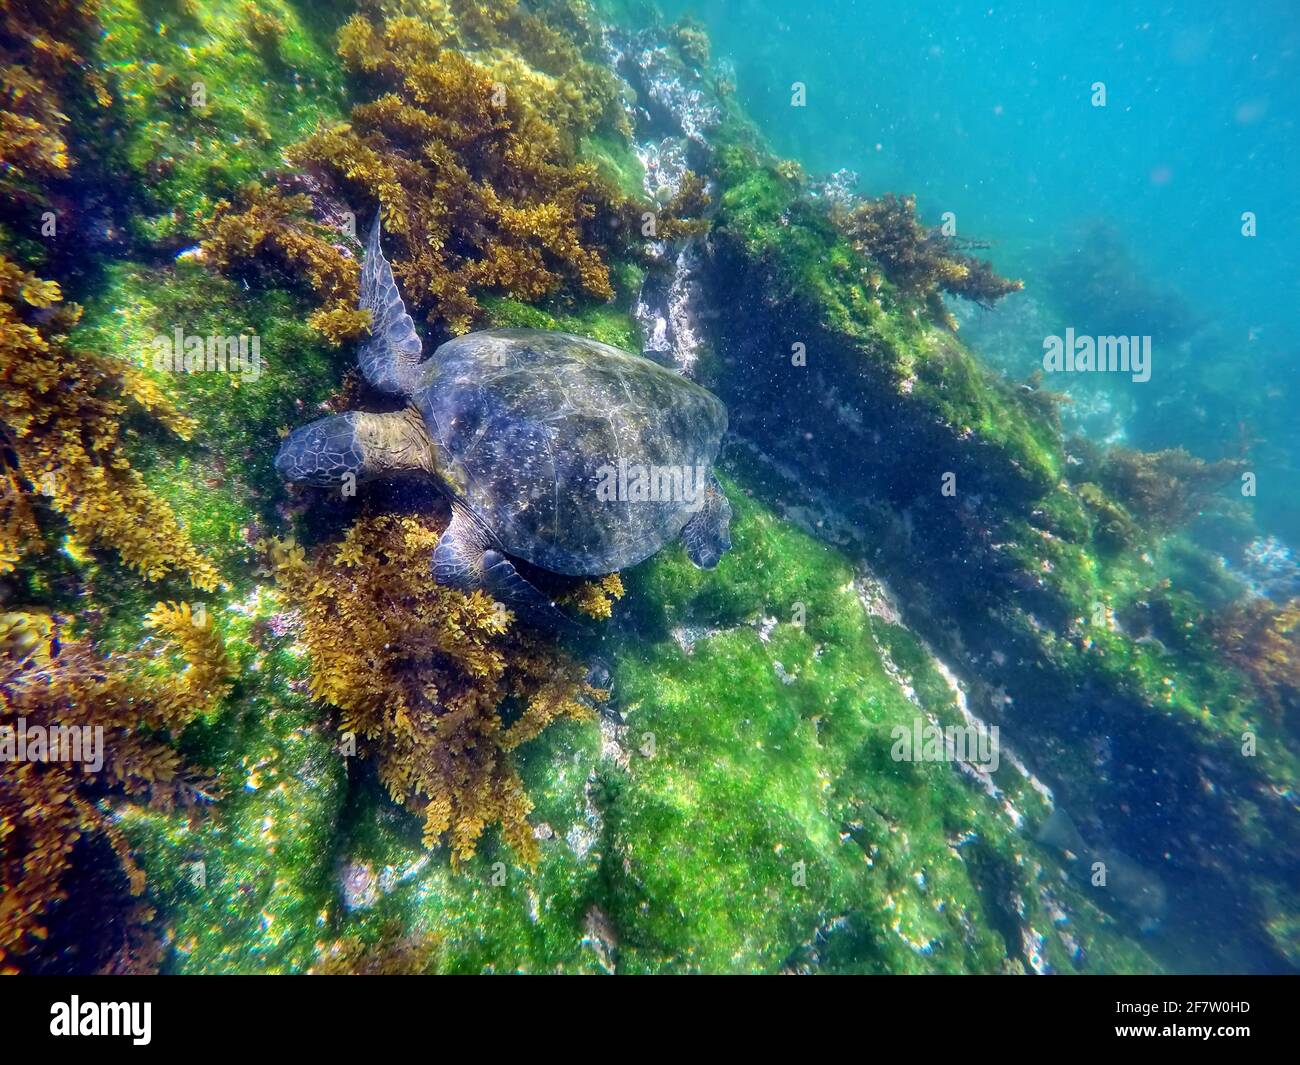 Galapagos green turtle eating seaweed at Punta Espinoza, Fernandina Island, Galapagos, Ecuador Stock Photo